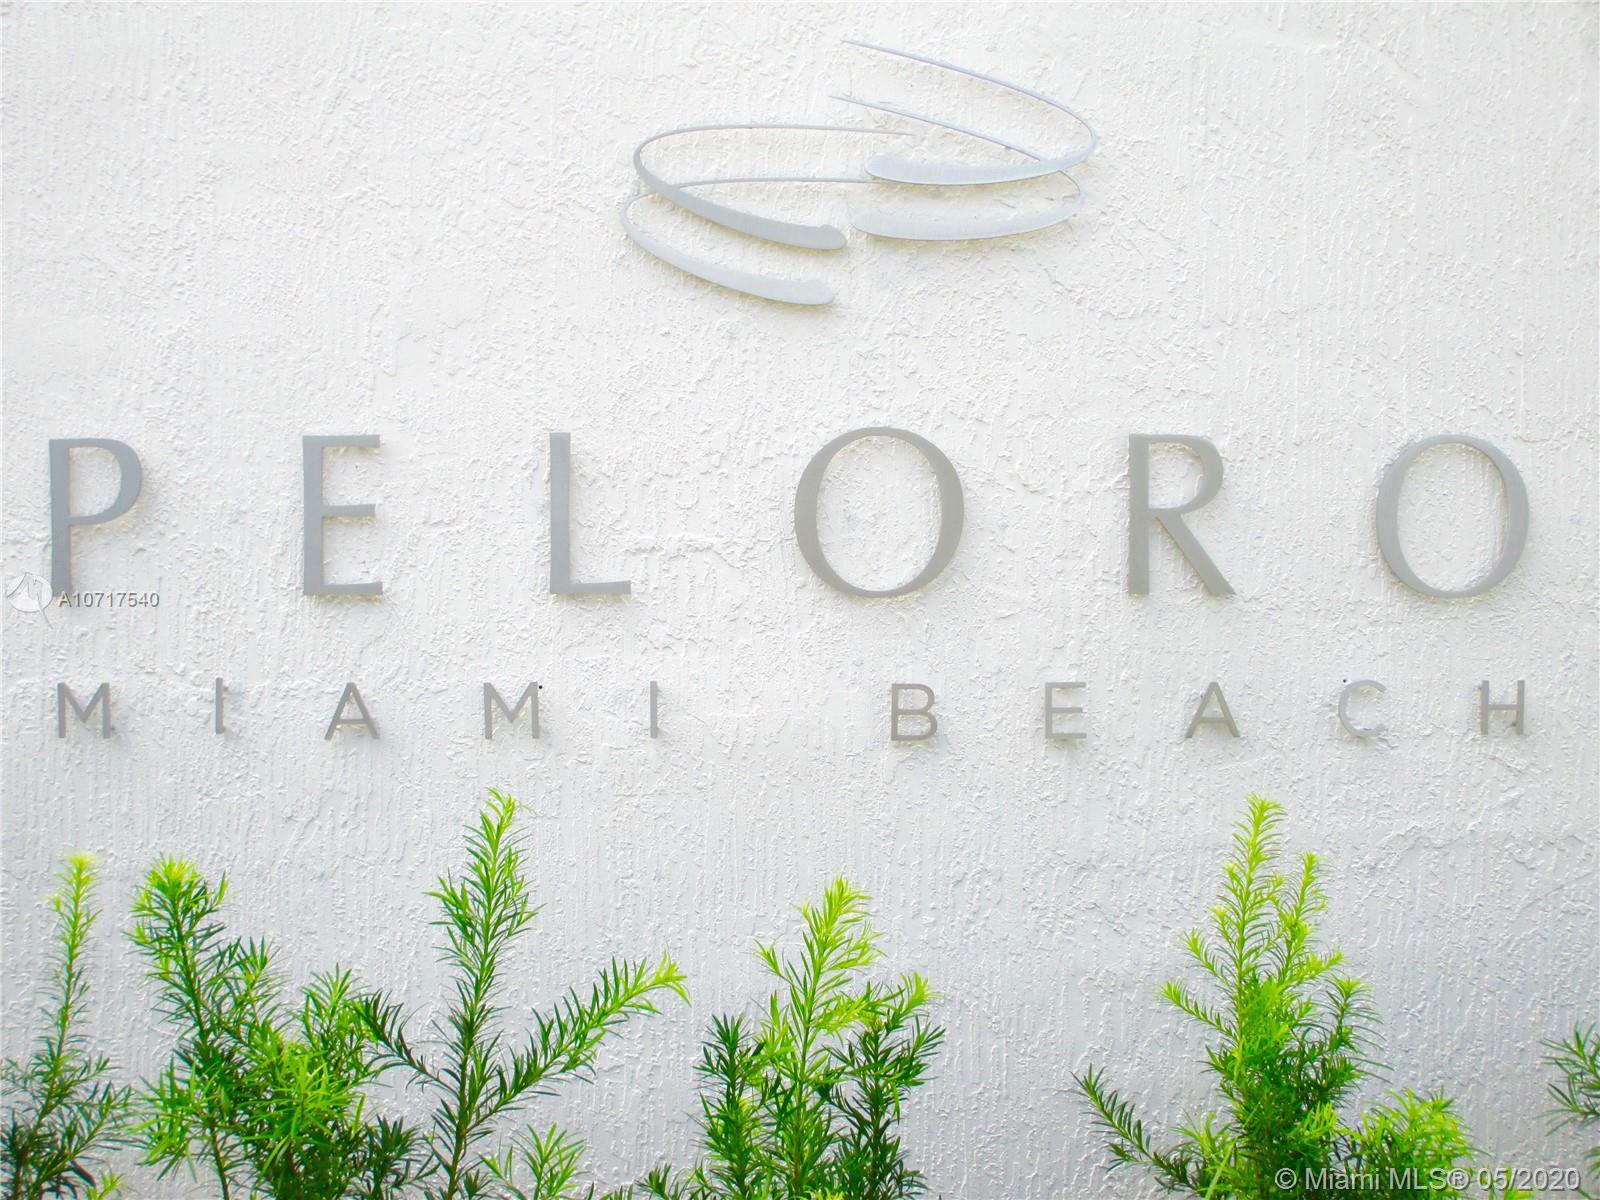 Peloro Miami Beach image #34